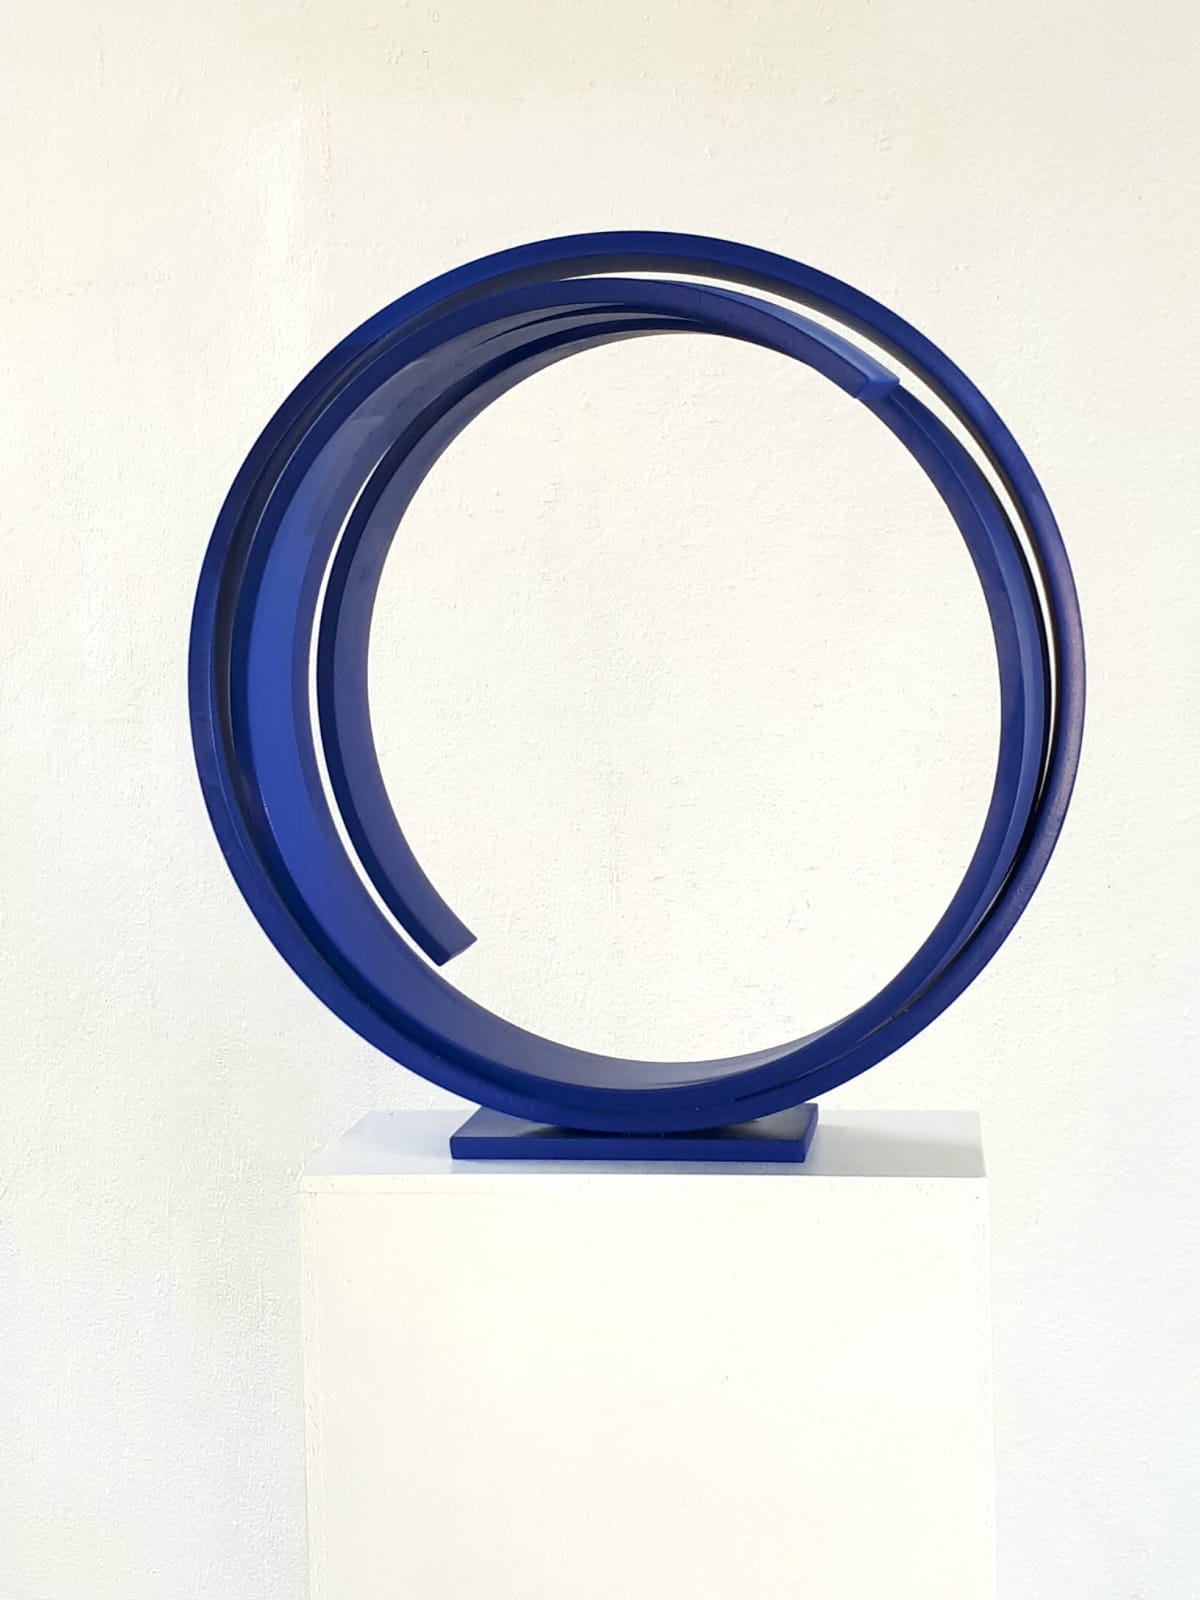 Blue Orbit - Kuno Vollet